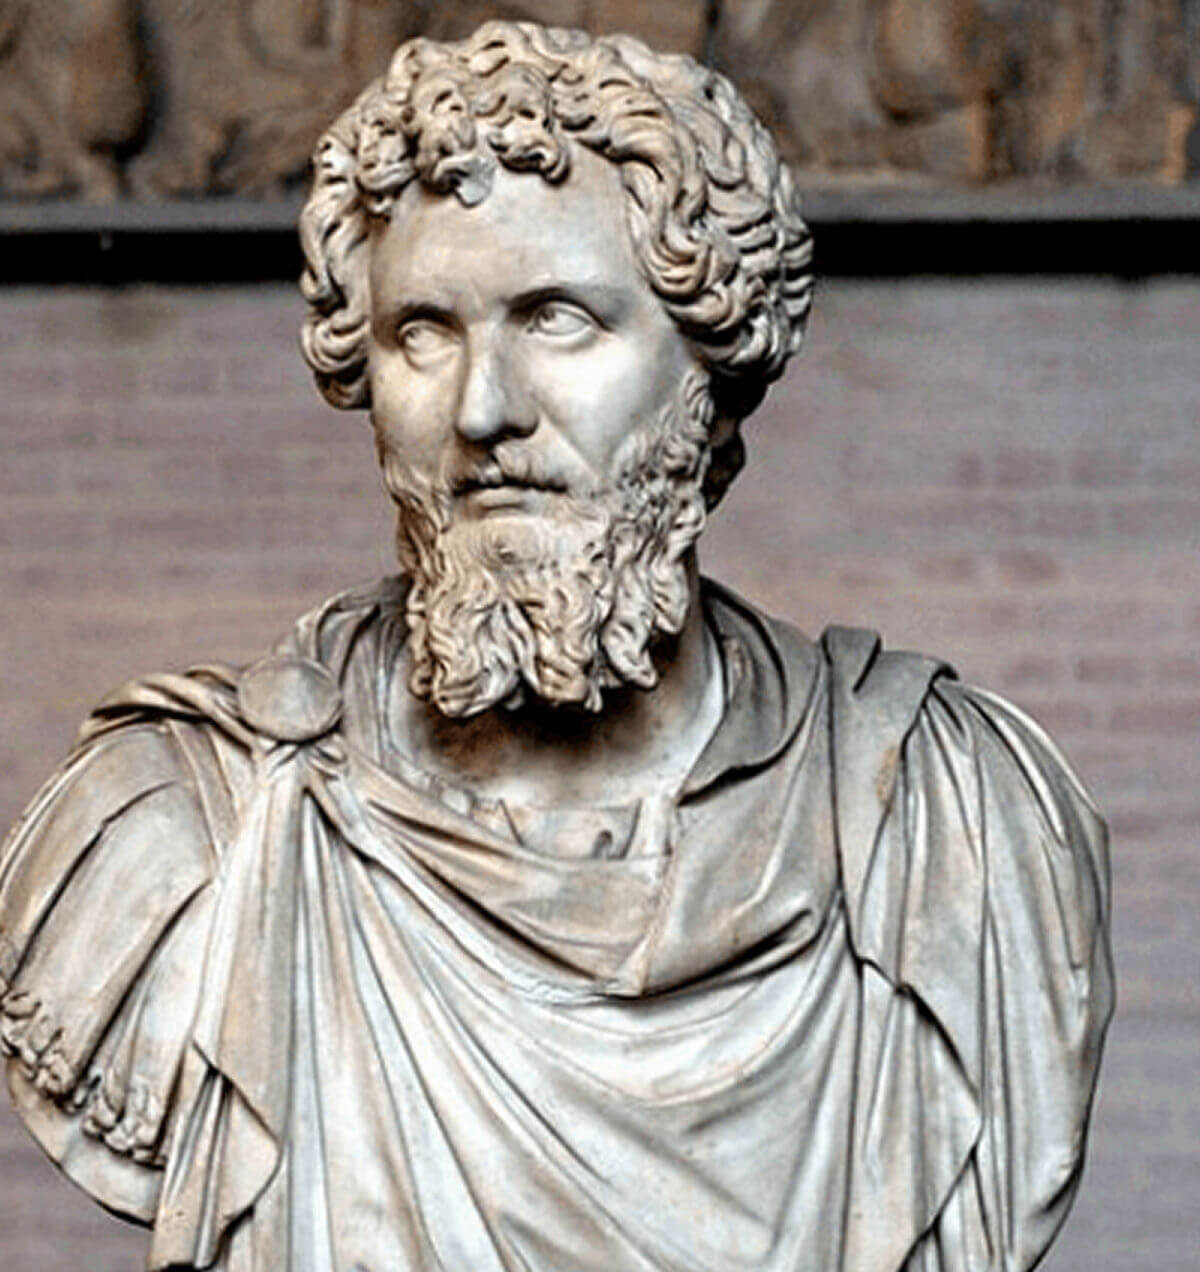 The Roman Emperor Septimius Severus